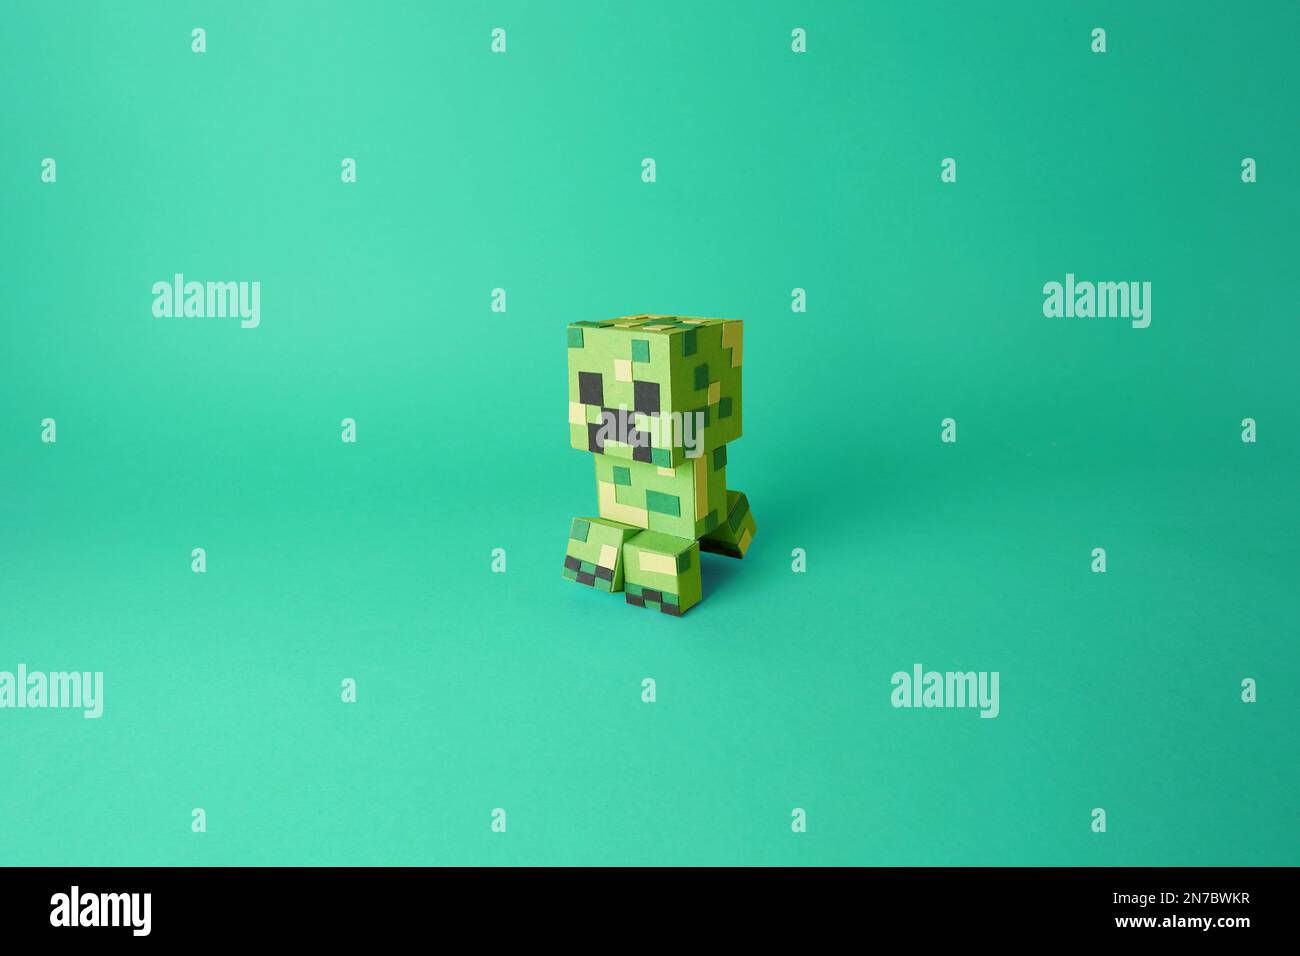 Papercraft einer isolierten Videospielfigur aus Minecraft, Creeper. Farbiges, grünes Papier, ausgeschnittene Modellkunst Stockfoto